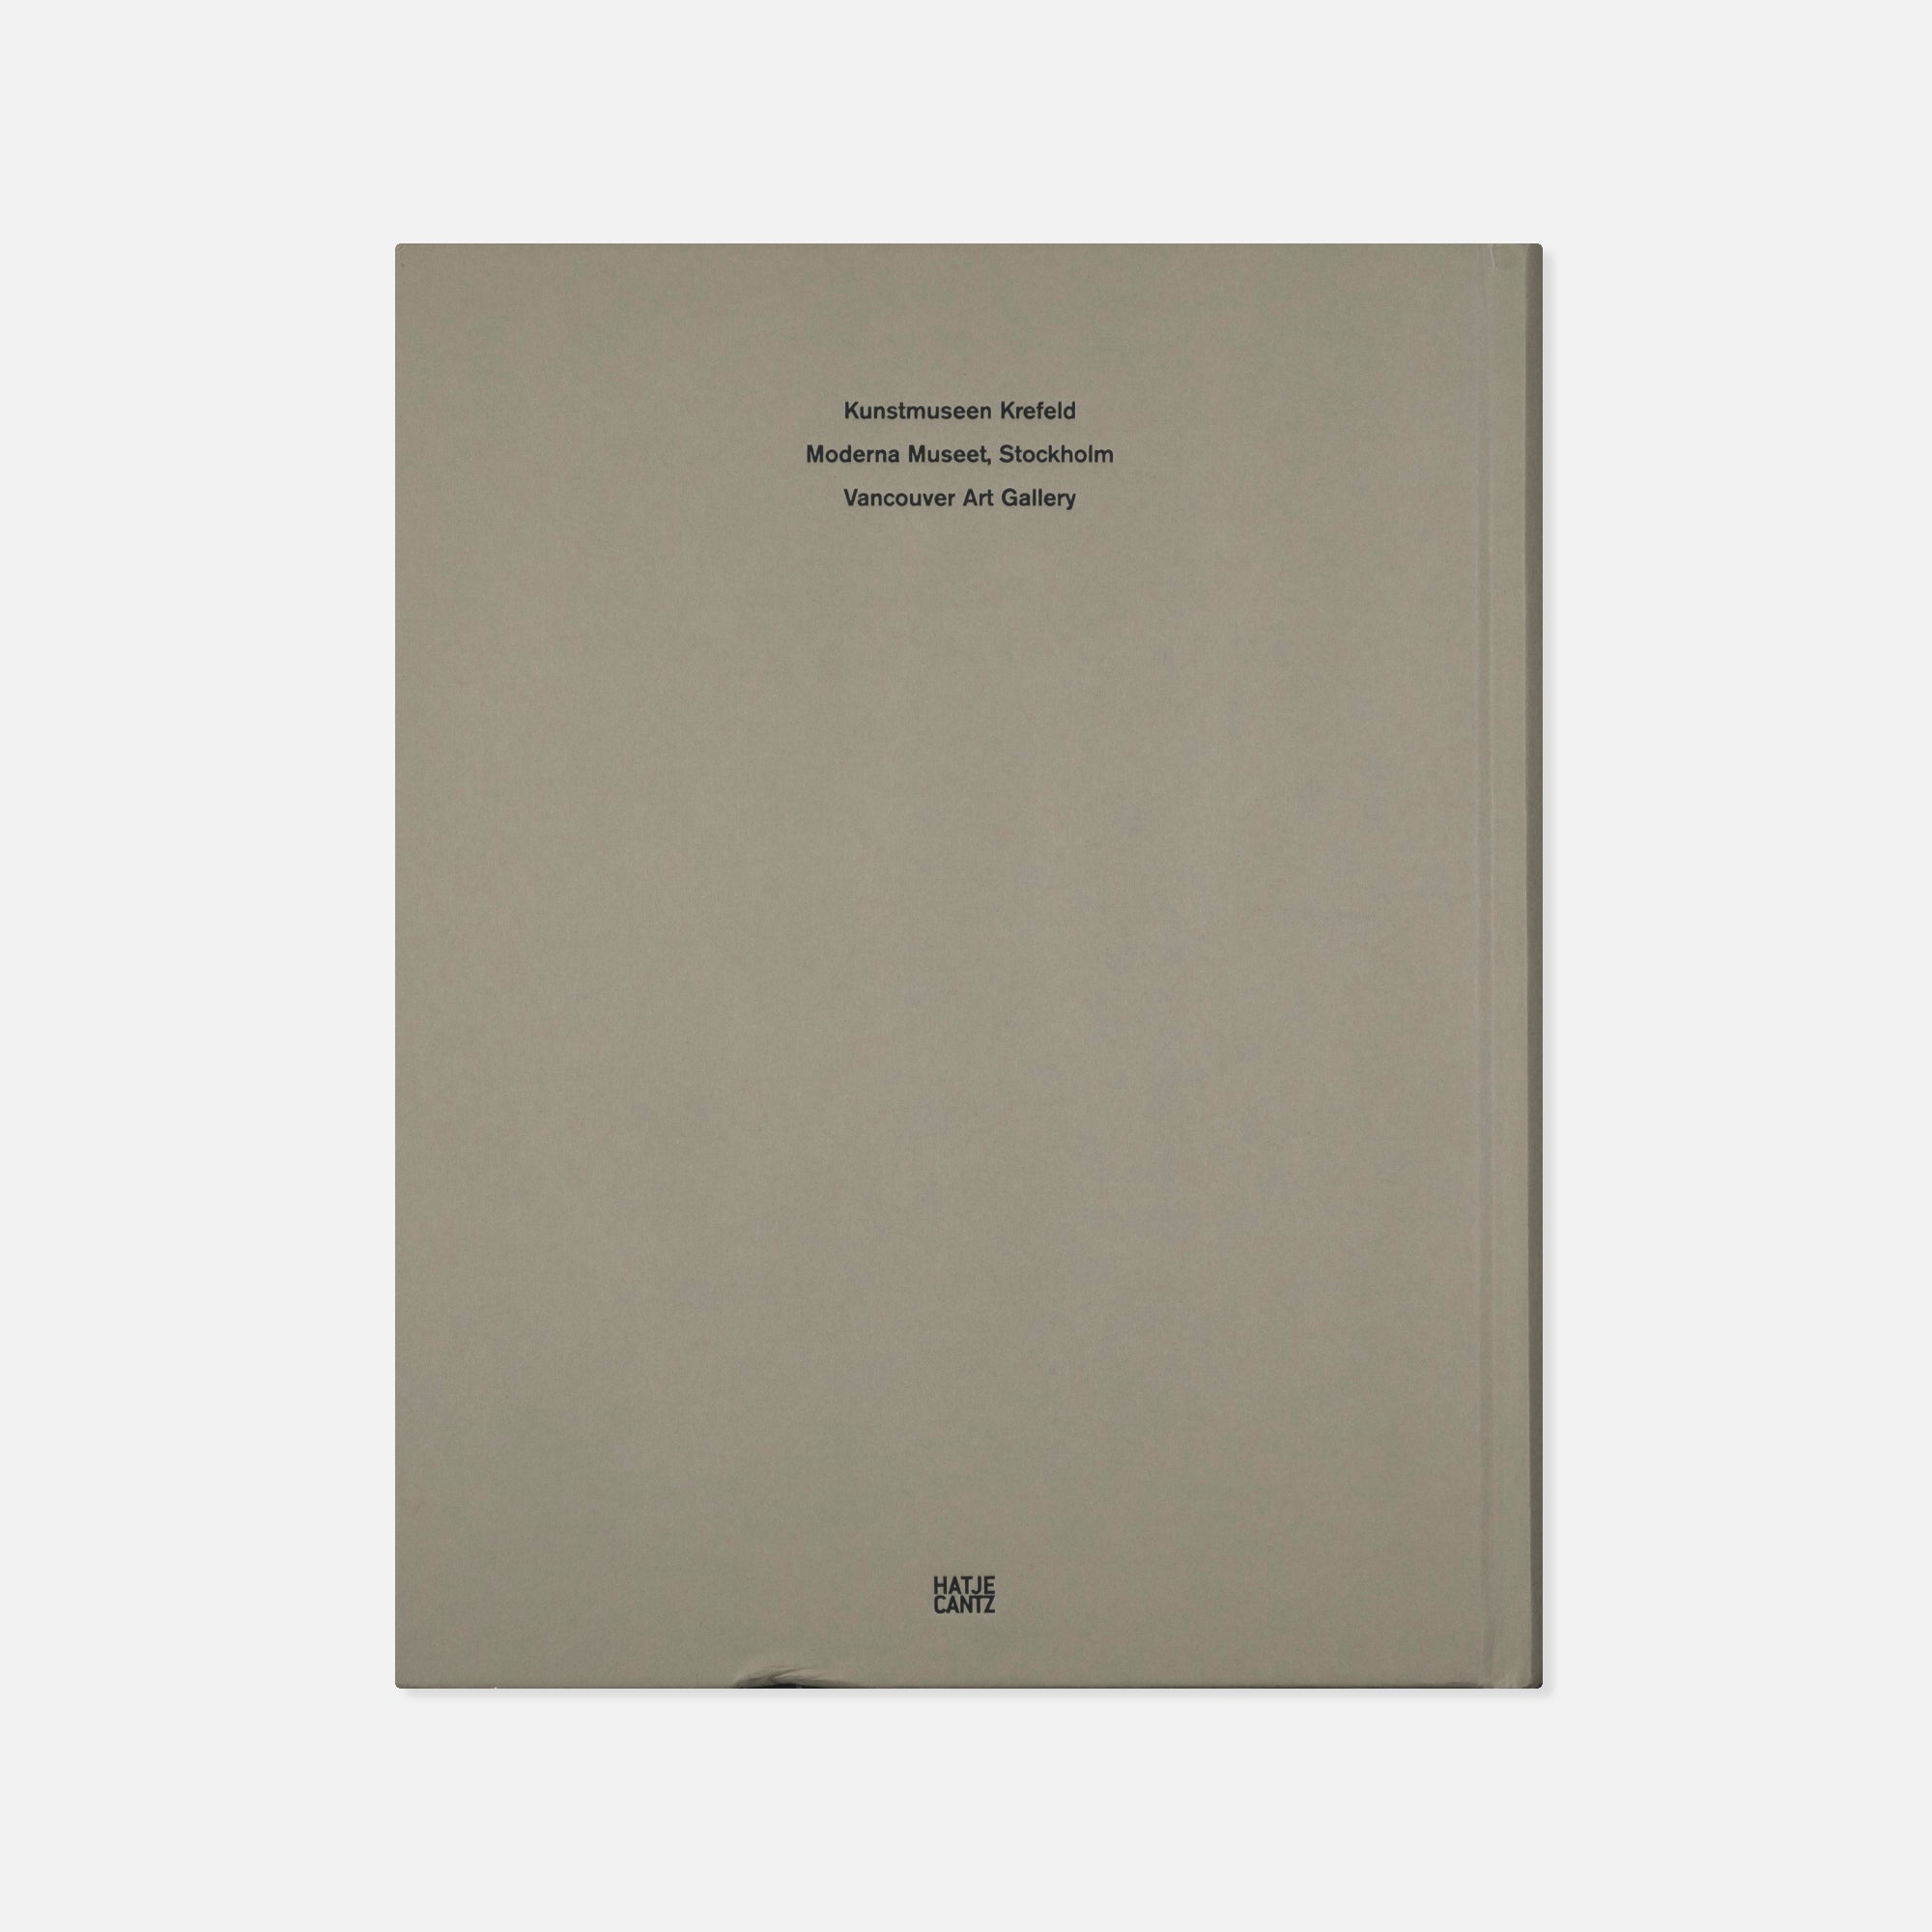 Andreas Gursky — Werke • Works 80-08